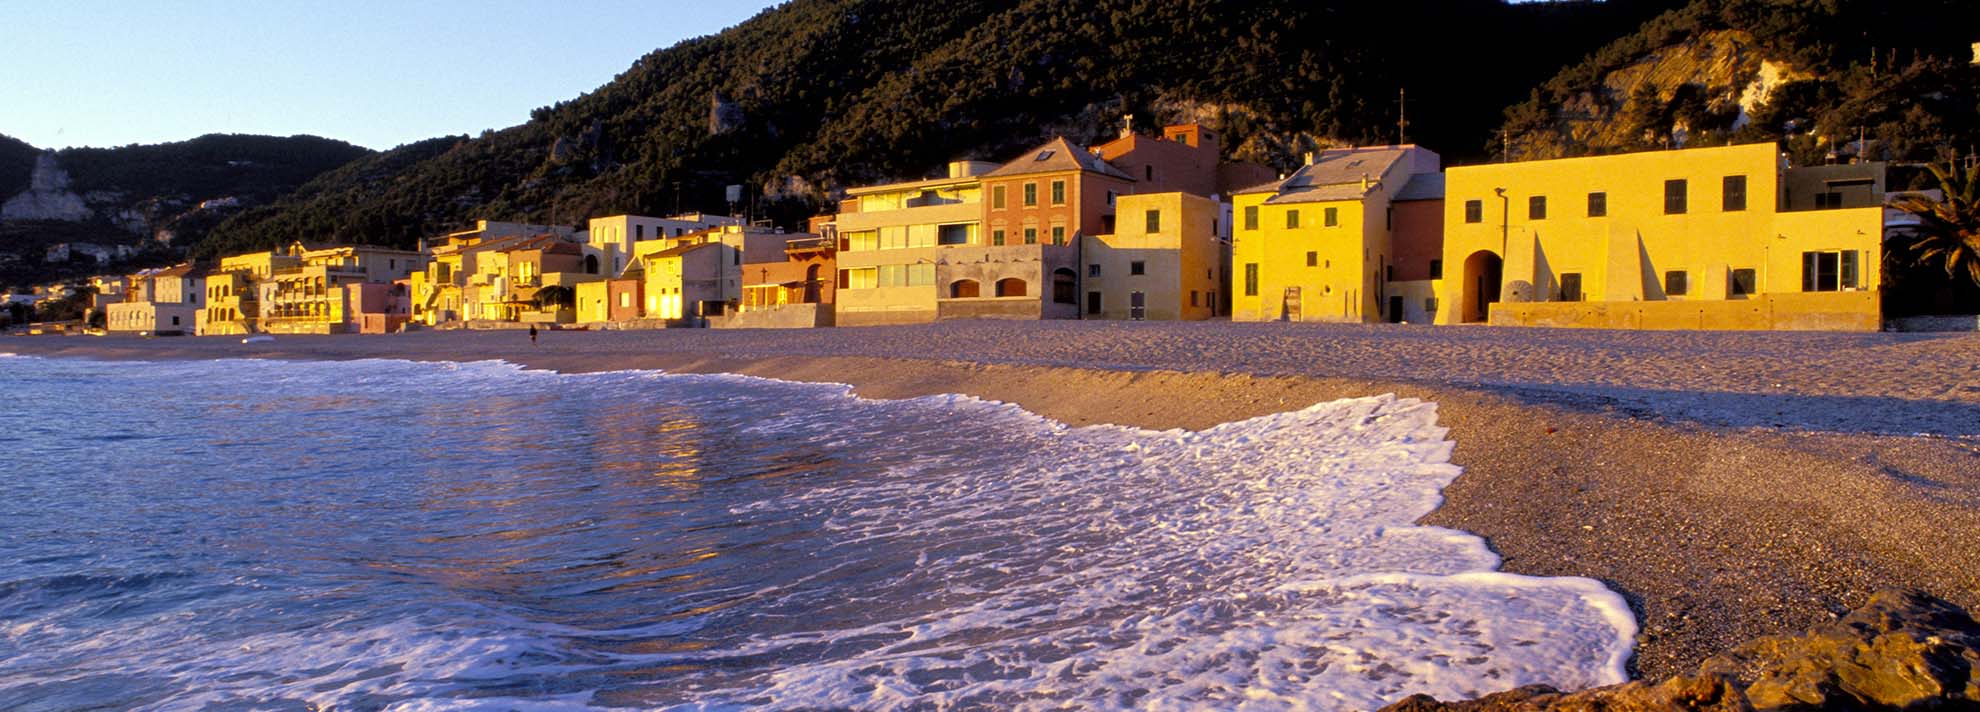 Varigotti localita La Mia Liguria testata